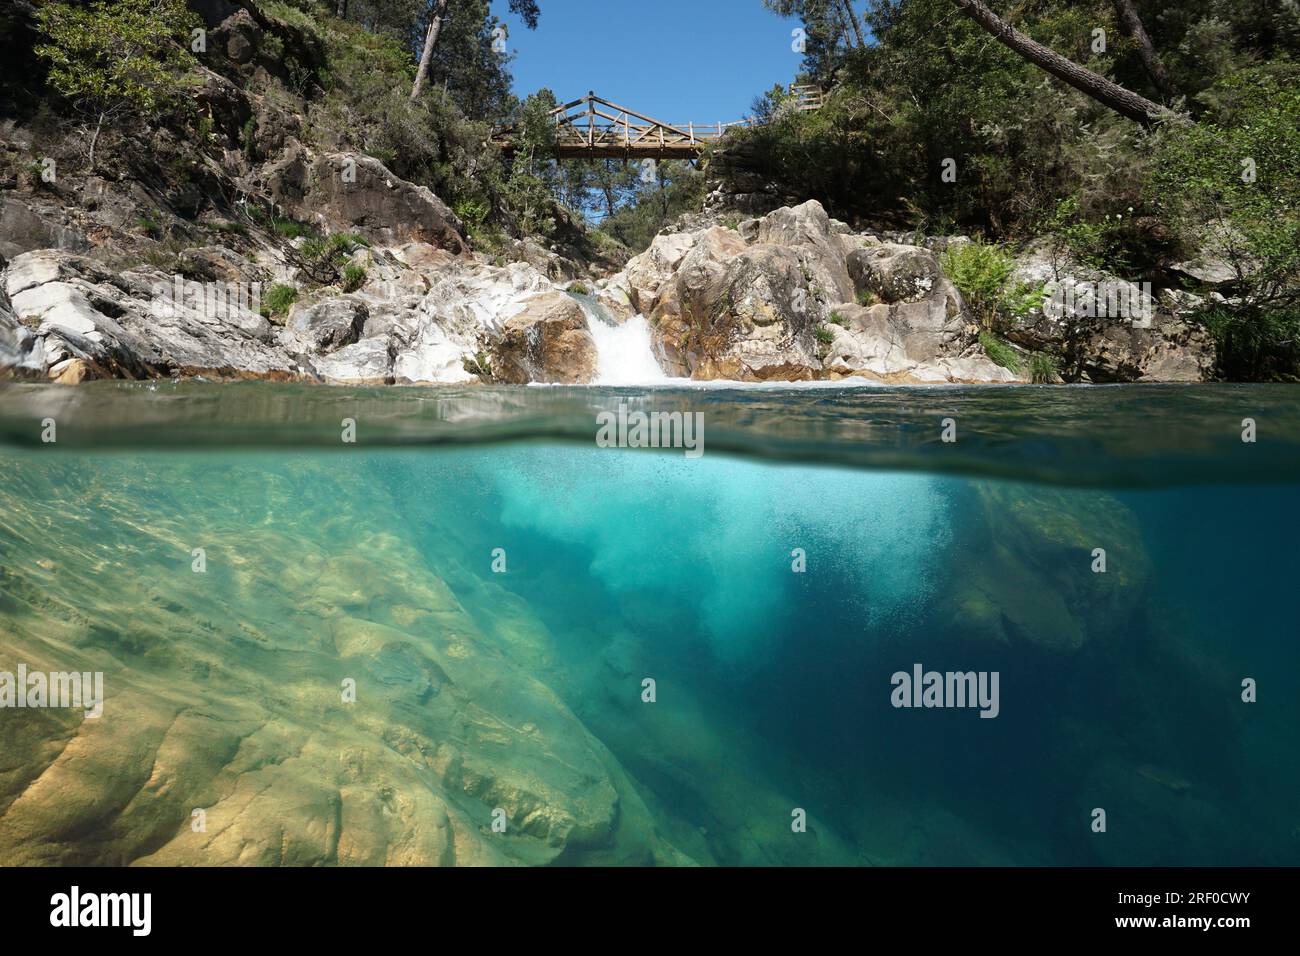 Natürlicher Pool in einem Fluss mit einer Kaskade, Naturszene, geteilter Blick über und unter der Wasseroberfläche, Spanien, Galicien, Provinz Pontevedra Stockfoto